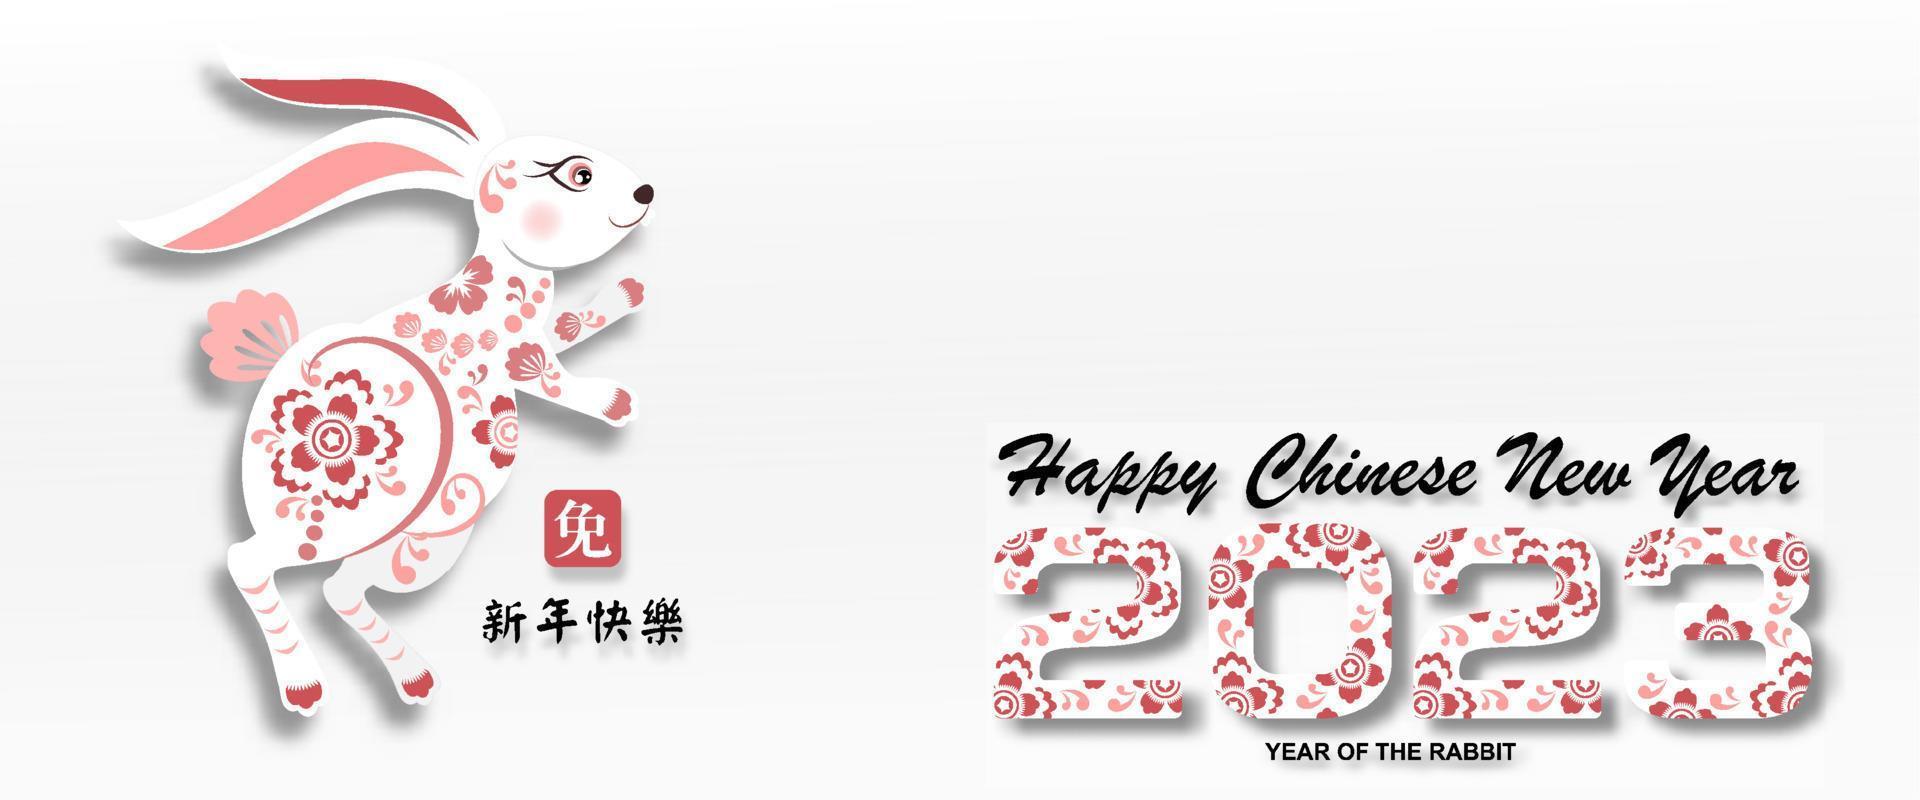 el dulce saludo de conejo para feliz año nuevo chino 2023. año del personaje de conejo con estilo asiático. la traducción al chino es el año medio del conejo feliz año nuevo chino. vector